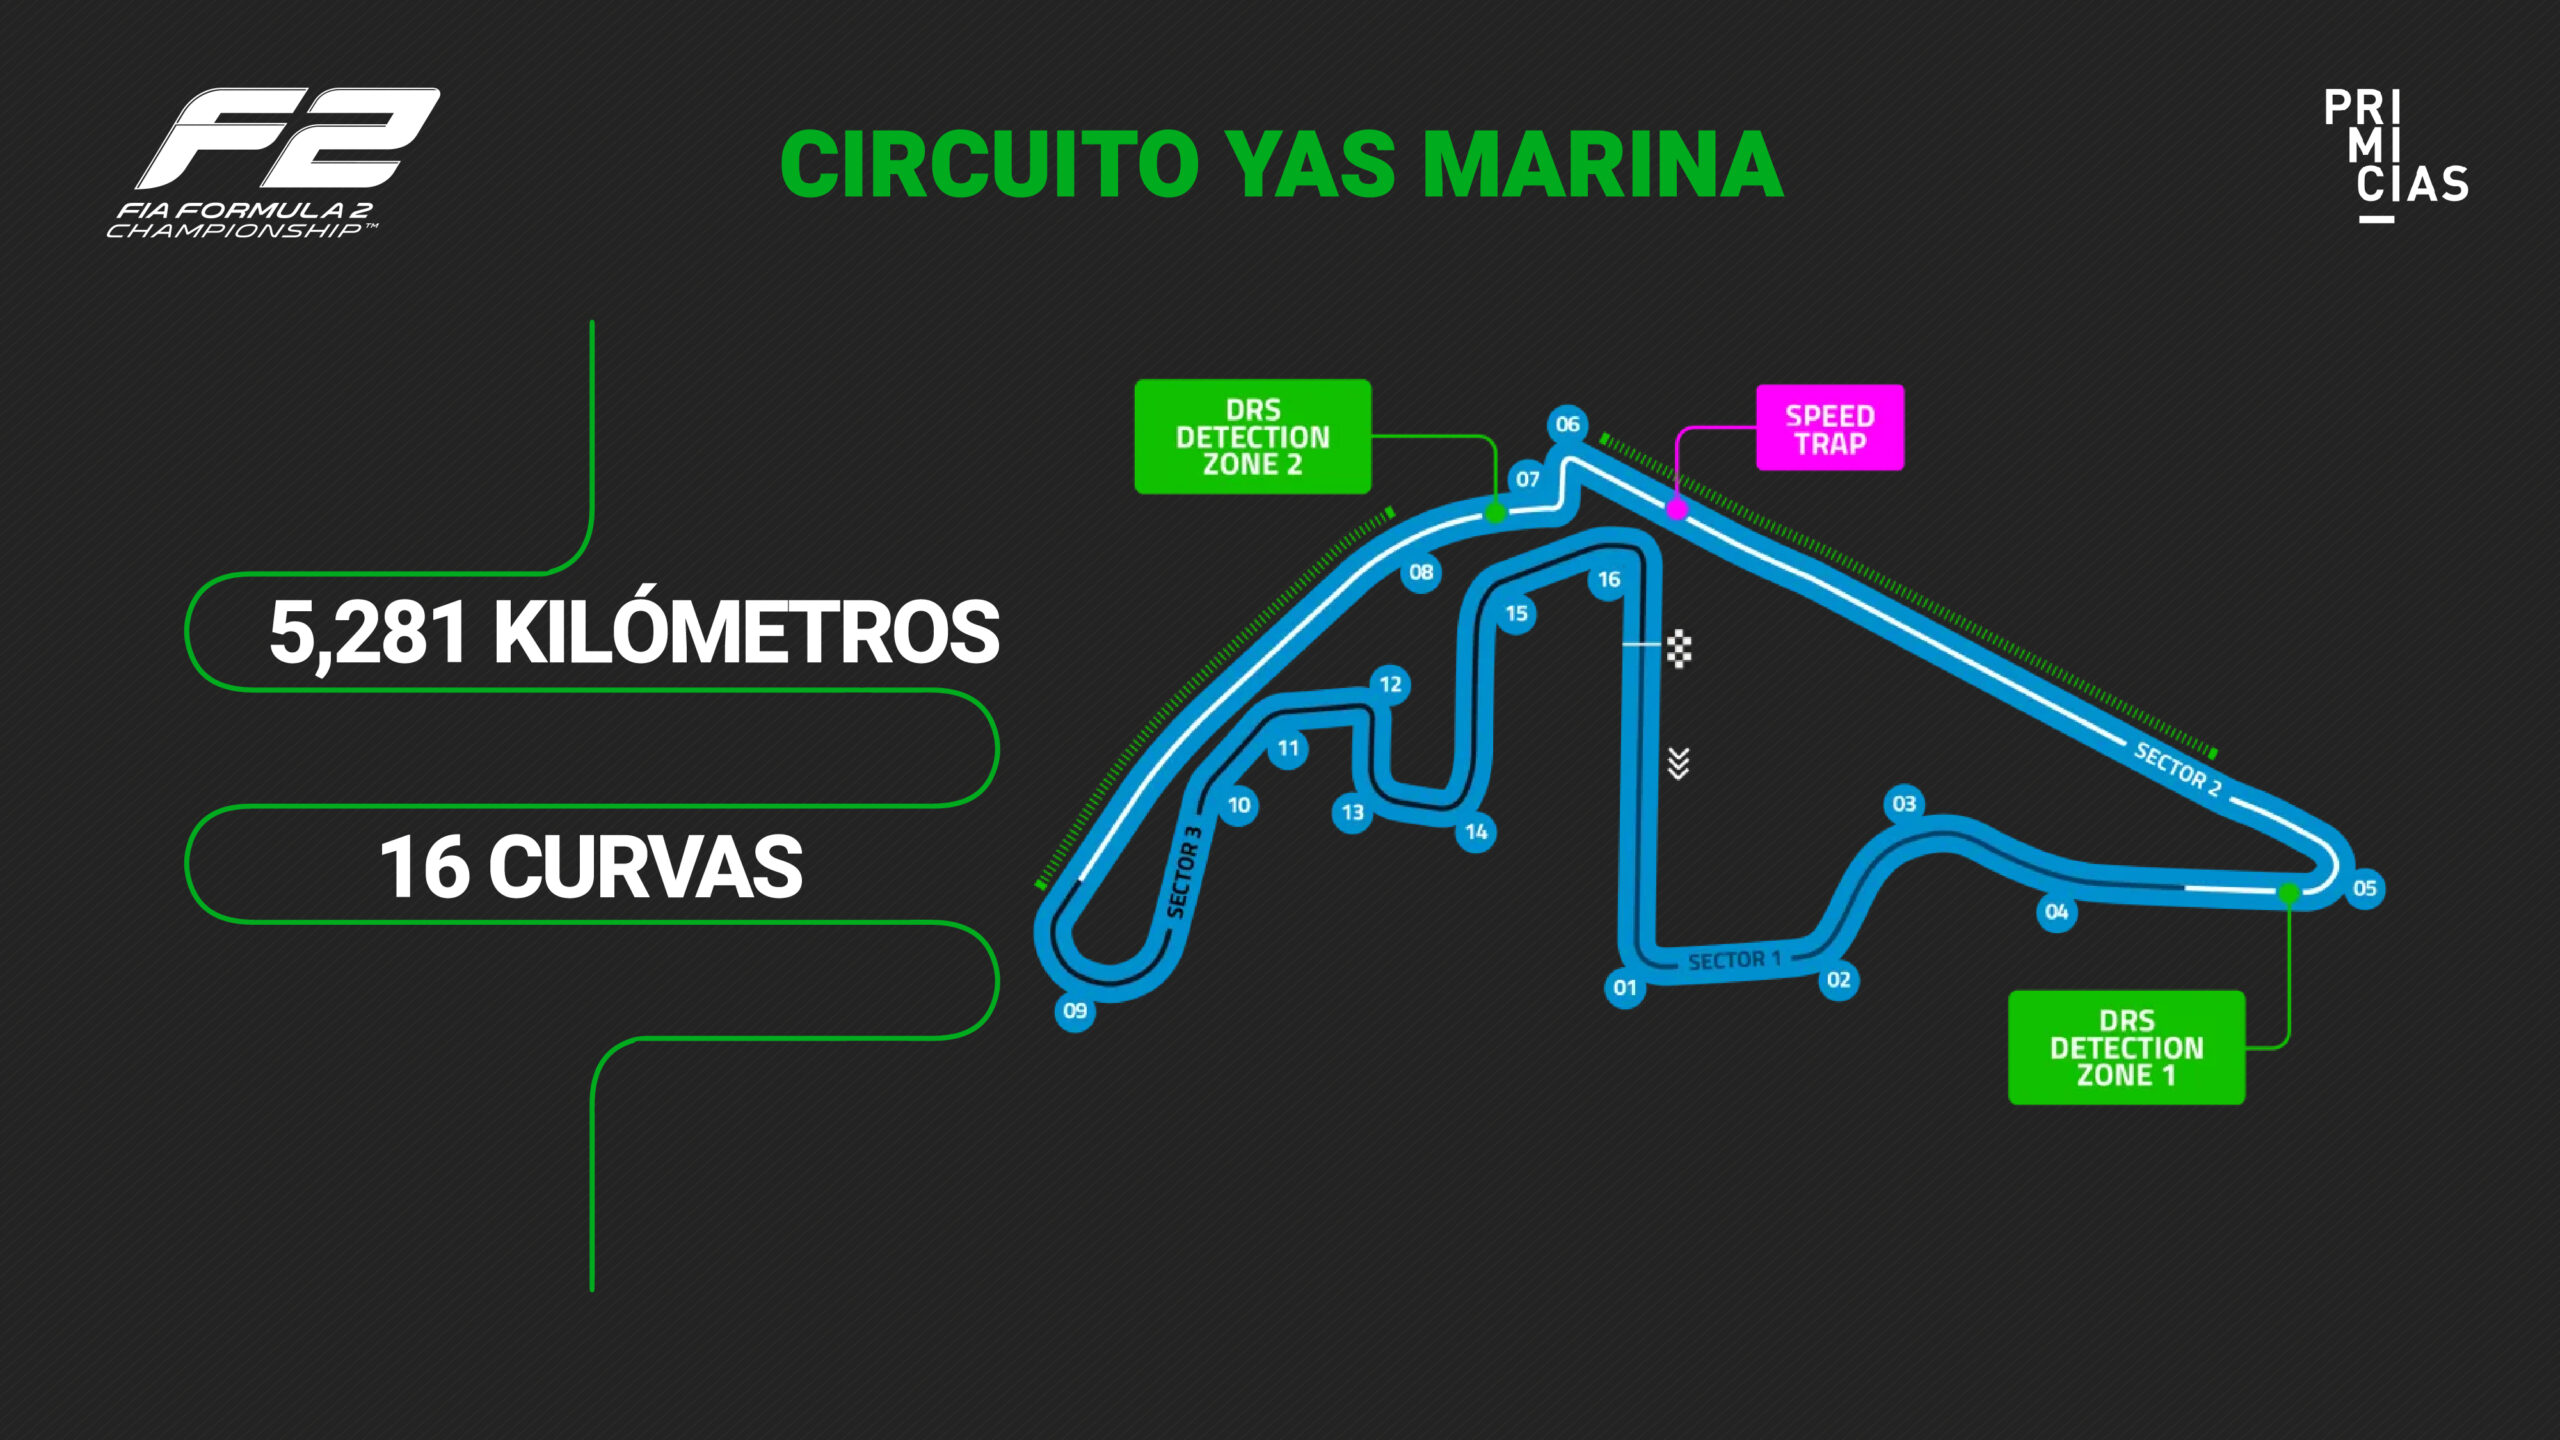 F2 - Circuito Yas Marina